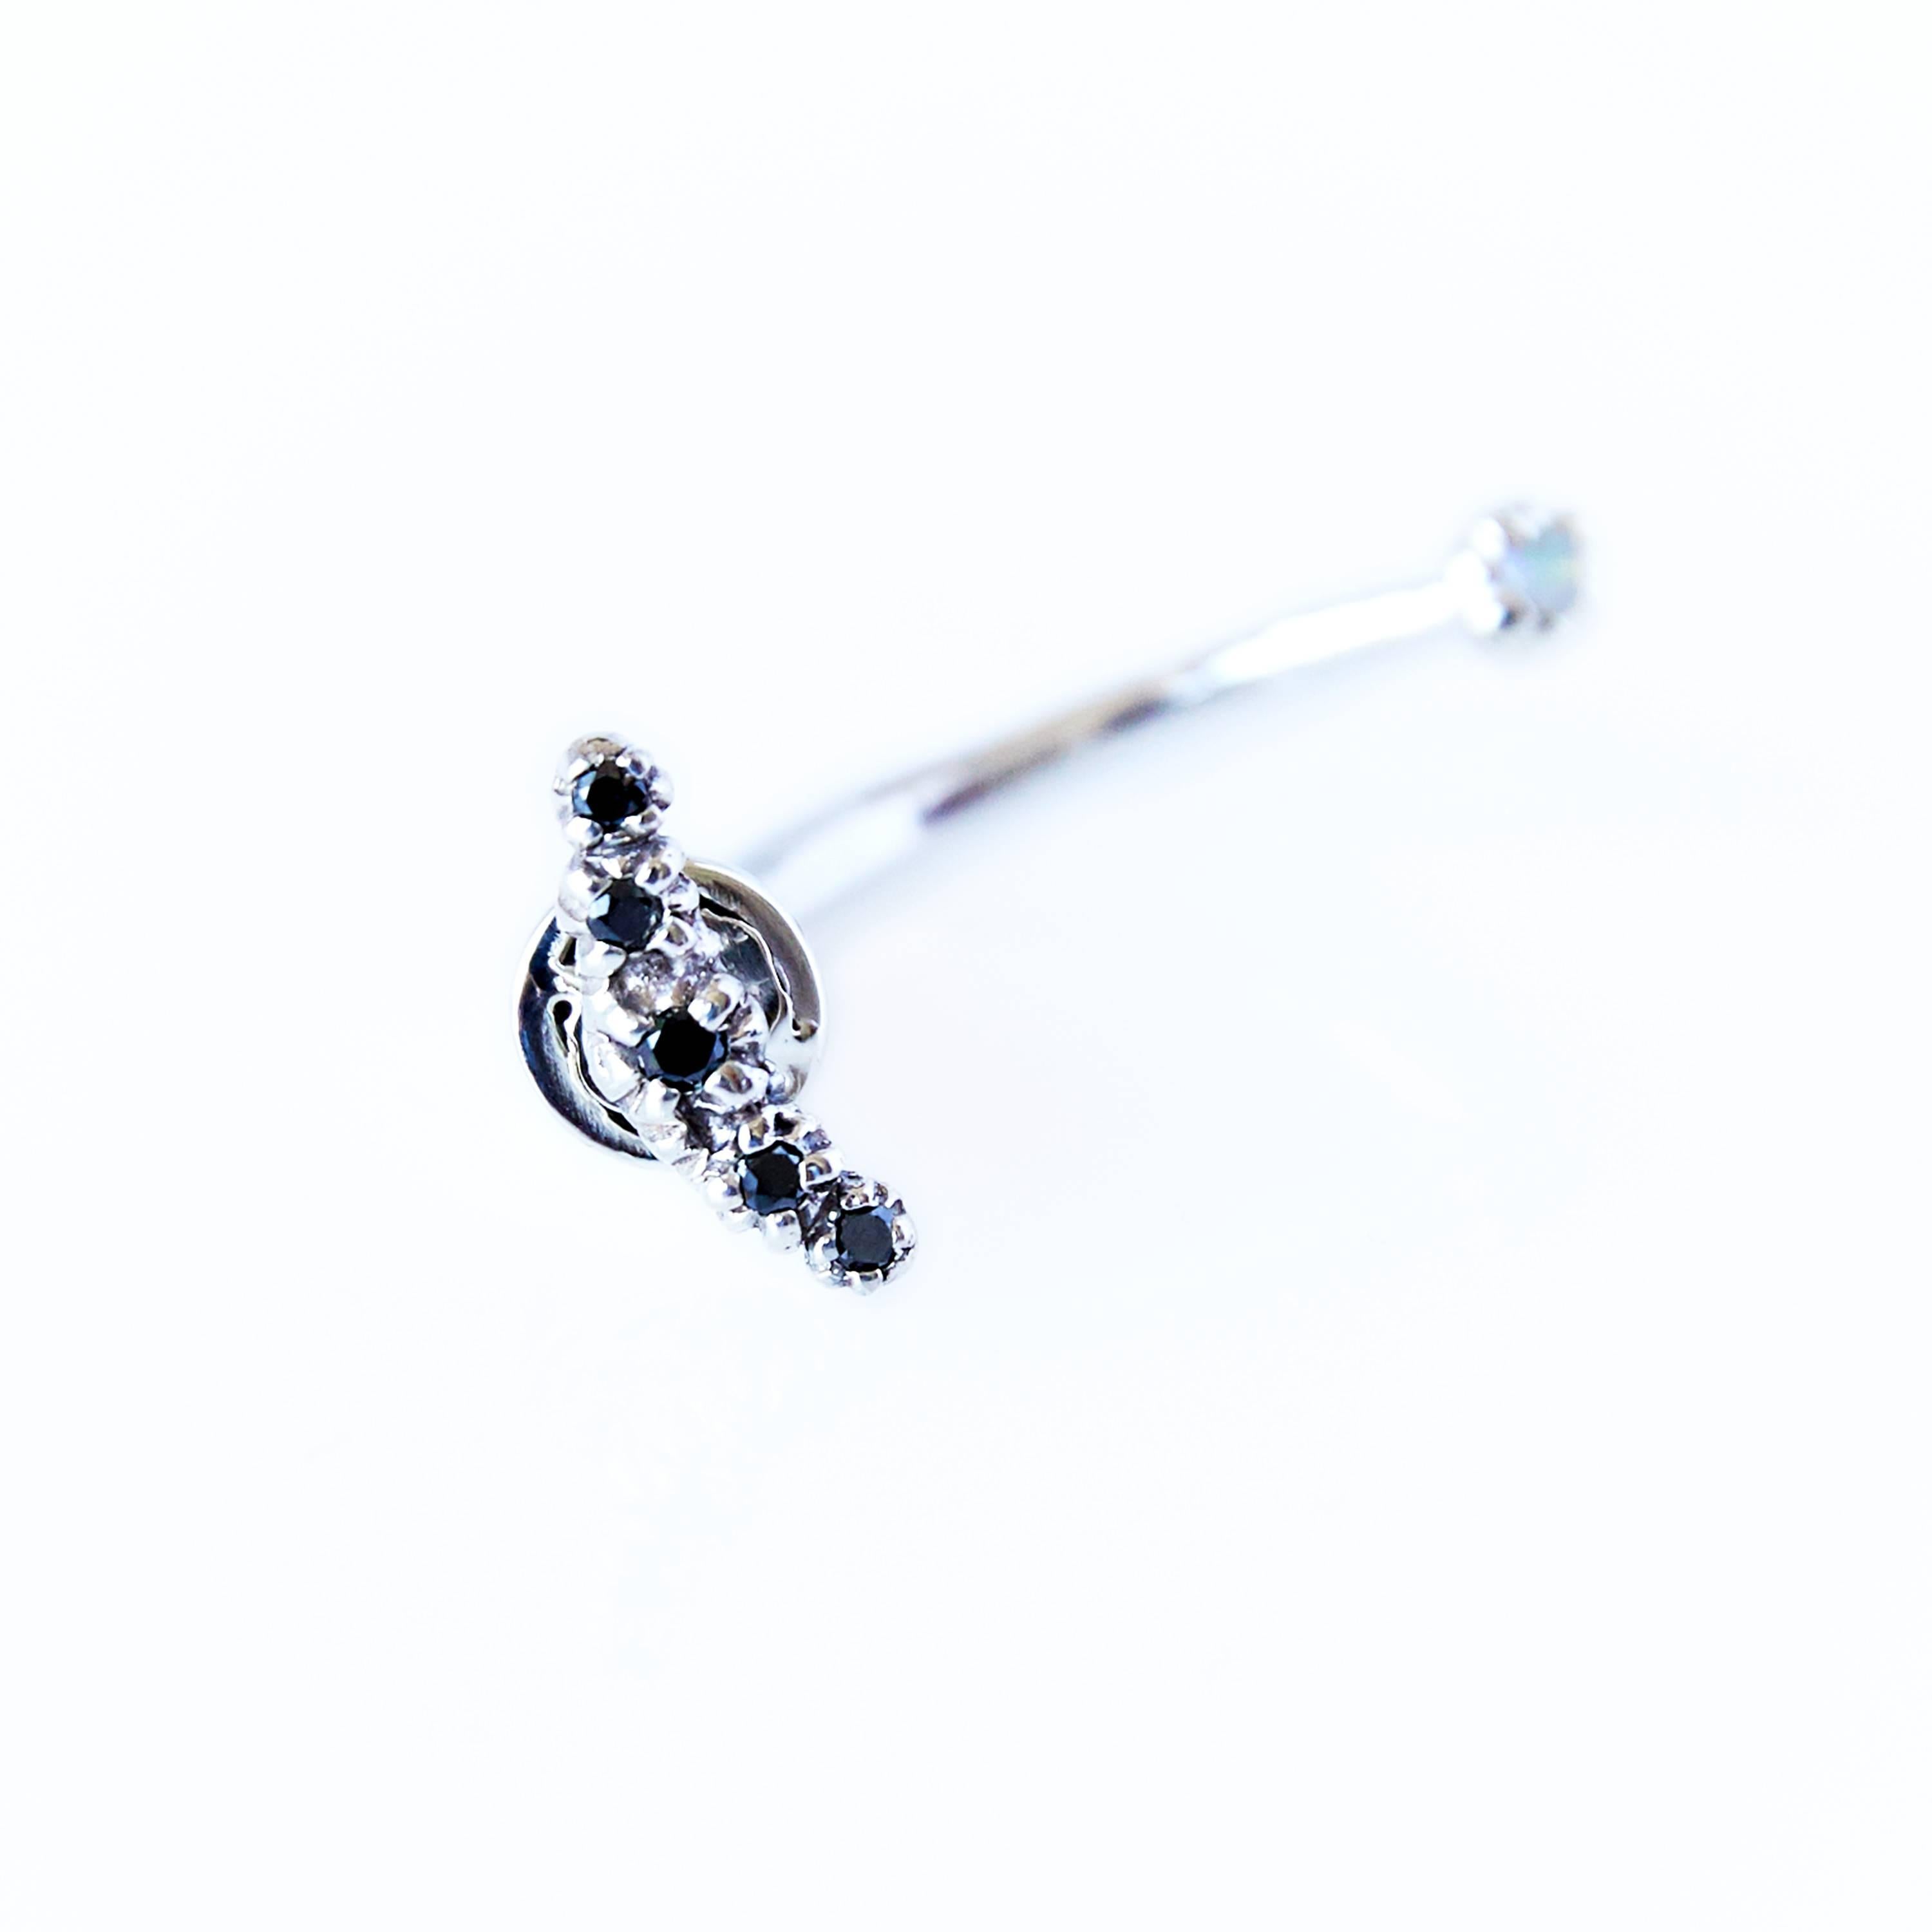 Schwarzer Diamant Opal Ohrring Silber Mond J Dauphin
einzelner Ohrring 